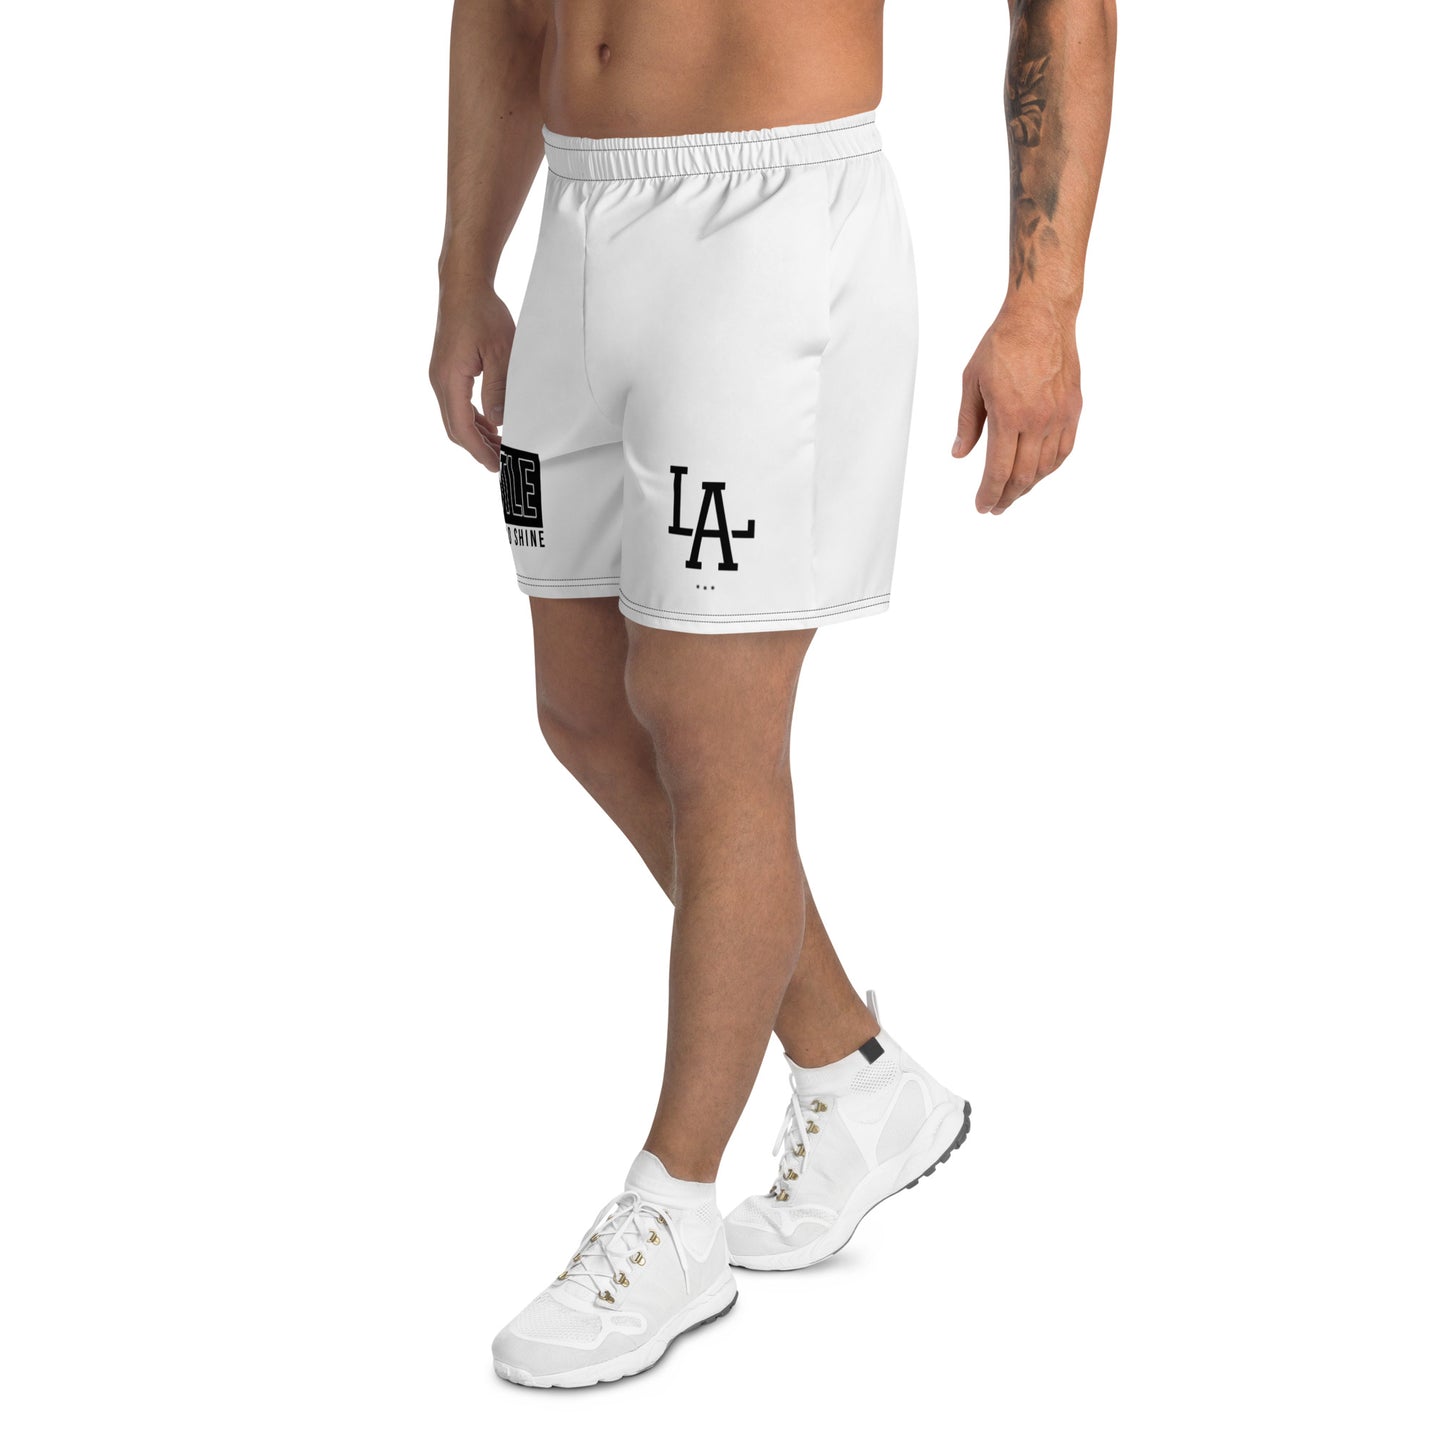 LatinoAthlete Men's Recycled Athletic Shorts